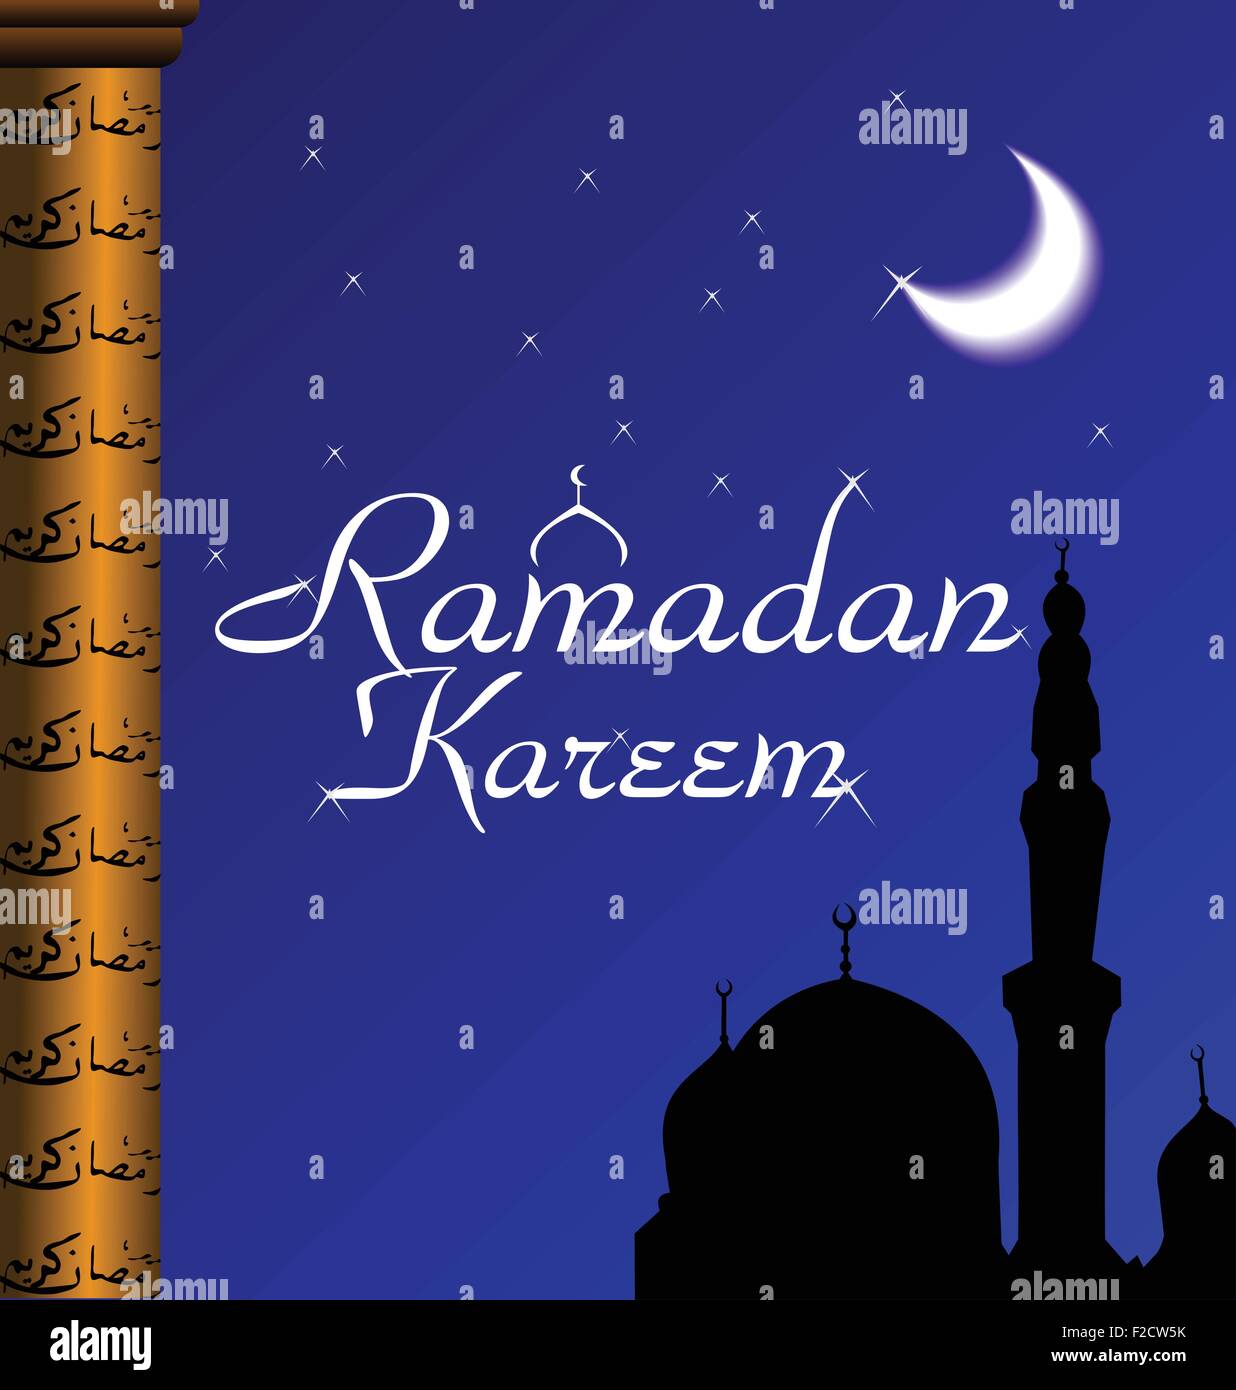 Как поздравить с окончанием рамадана. Рамадан. Поздравление с Рамаданом. С праздником Рамадан. Рамадан открытки.